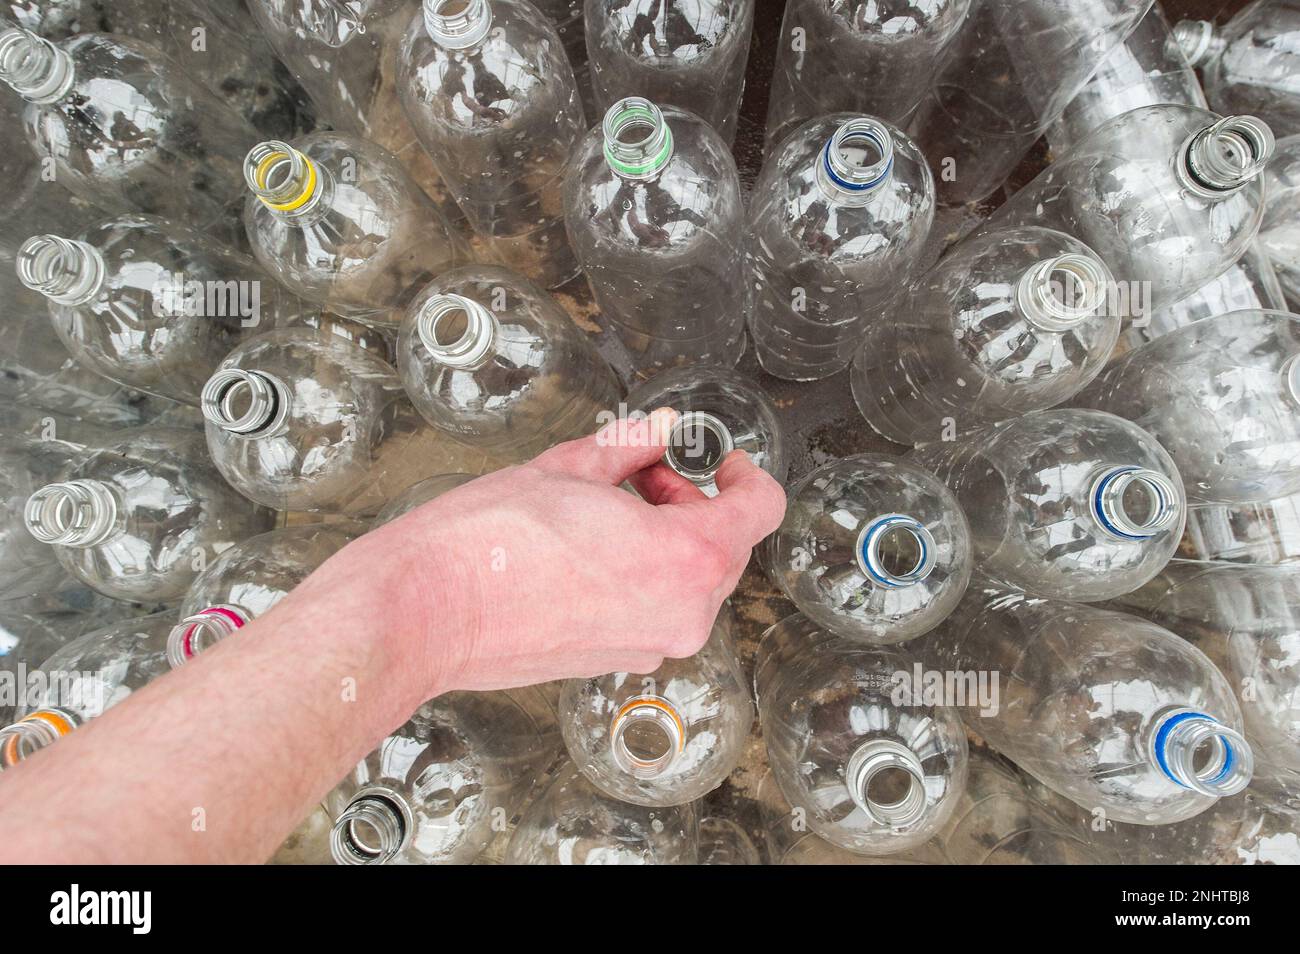 Foto del file datata 27/04/13 di bottiglie di plastica, in quanto gli attivisti ambientali chiedono "meno scuse e meno trascinamento" dalle imprese prima dell'introduzione del sistema scozzese di restituzione dei depositi (DRS). Foto Stock